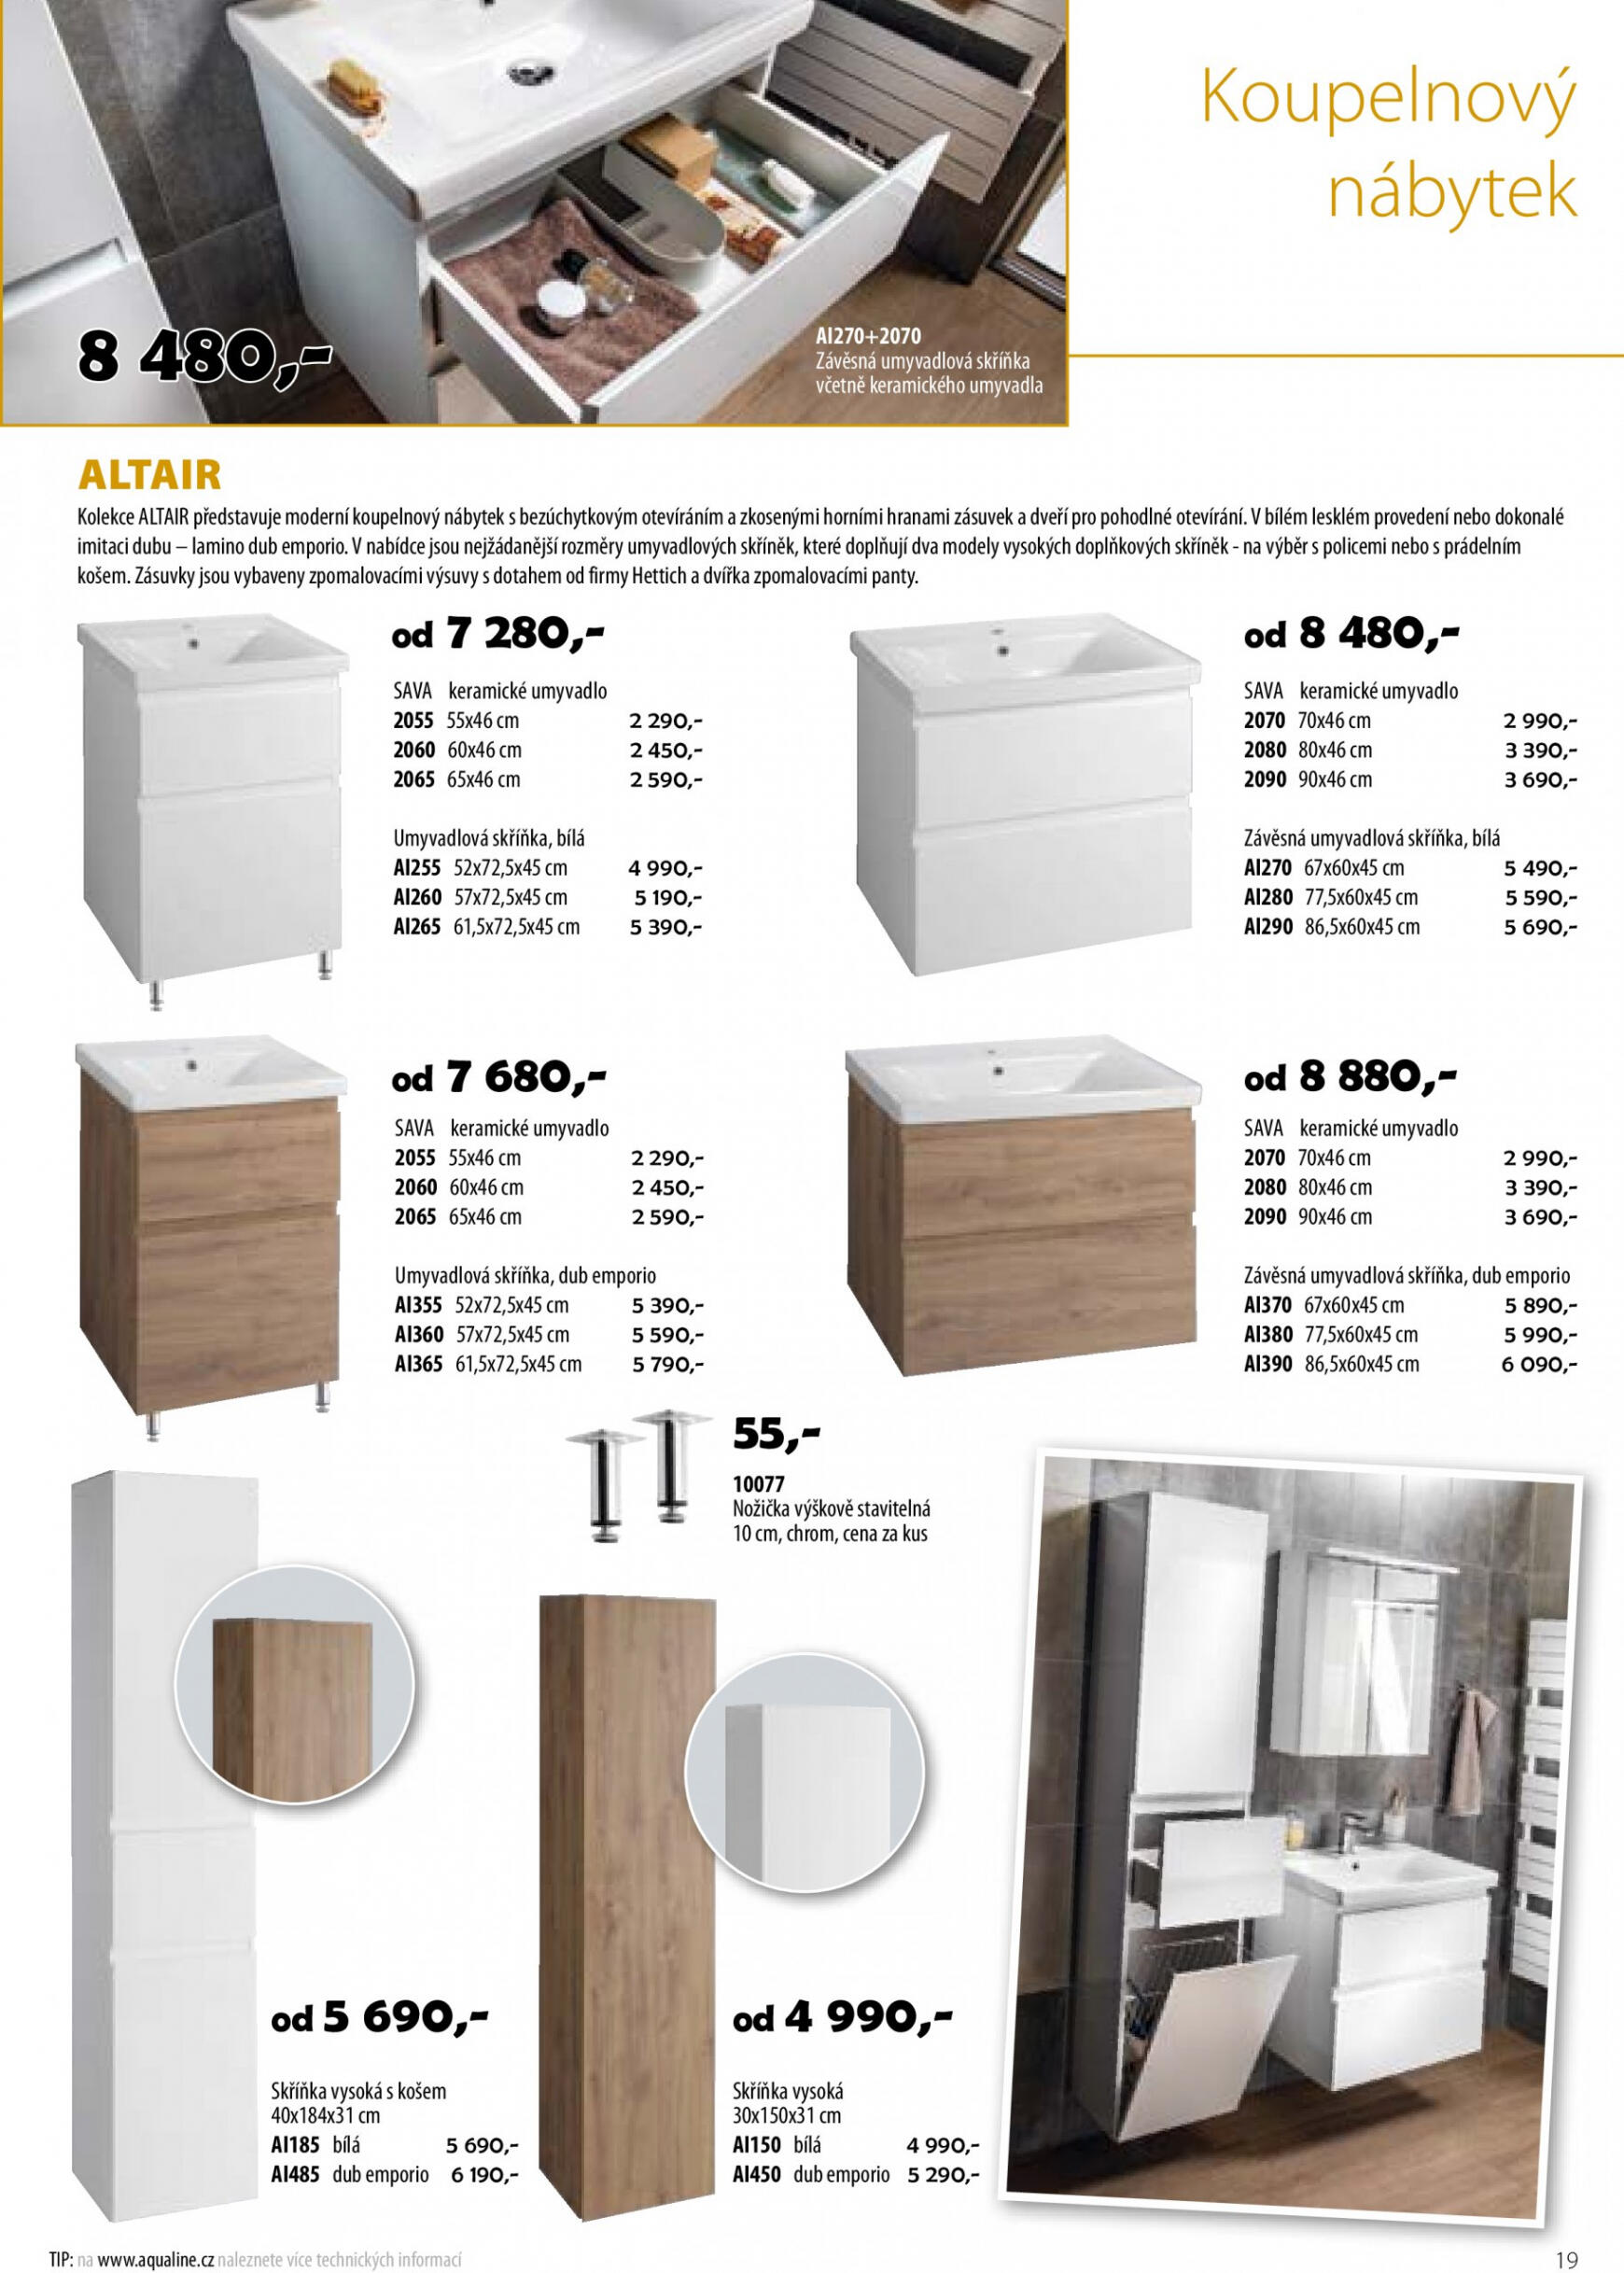 sapho-koupelny - Sapho koupelny platný od 01.05.2023 - page: 19